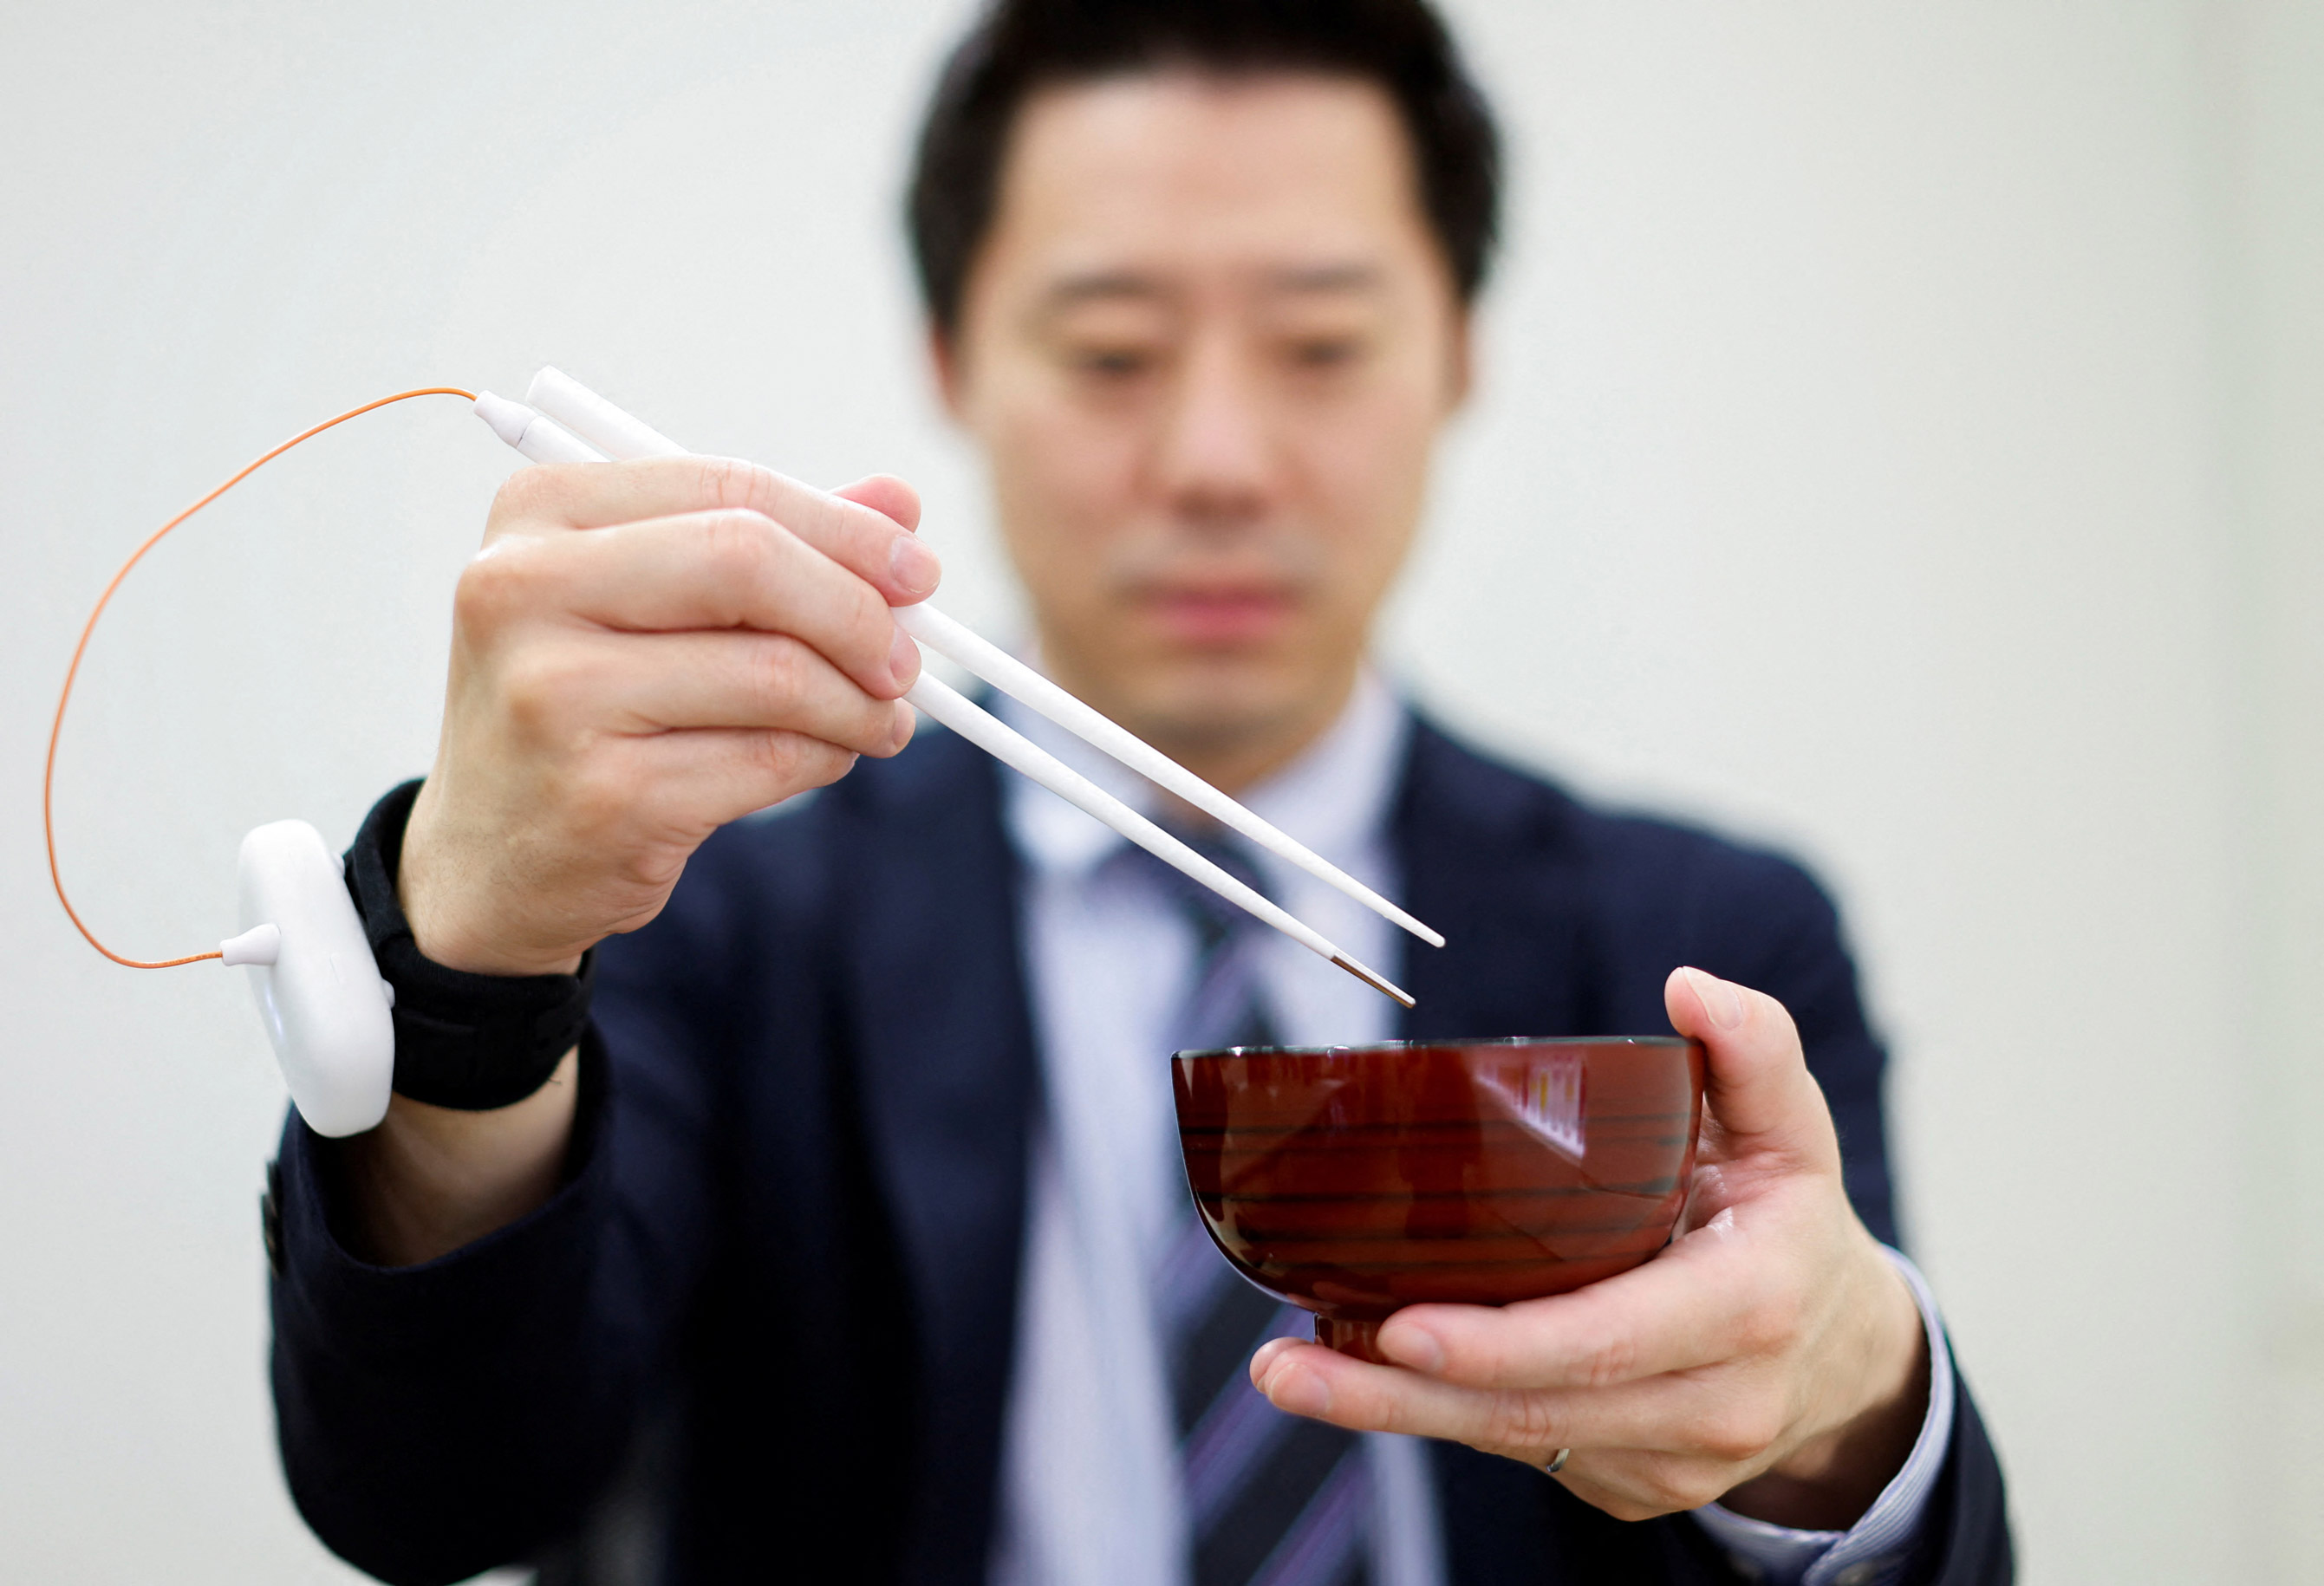 Ăn giảm muối: Nhật Bản chế ra đôi đũa khiến đồ ăn có cảm giác mặn hơn thực tế